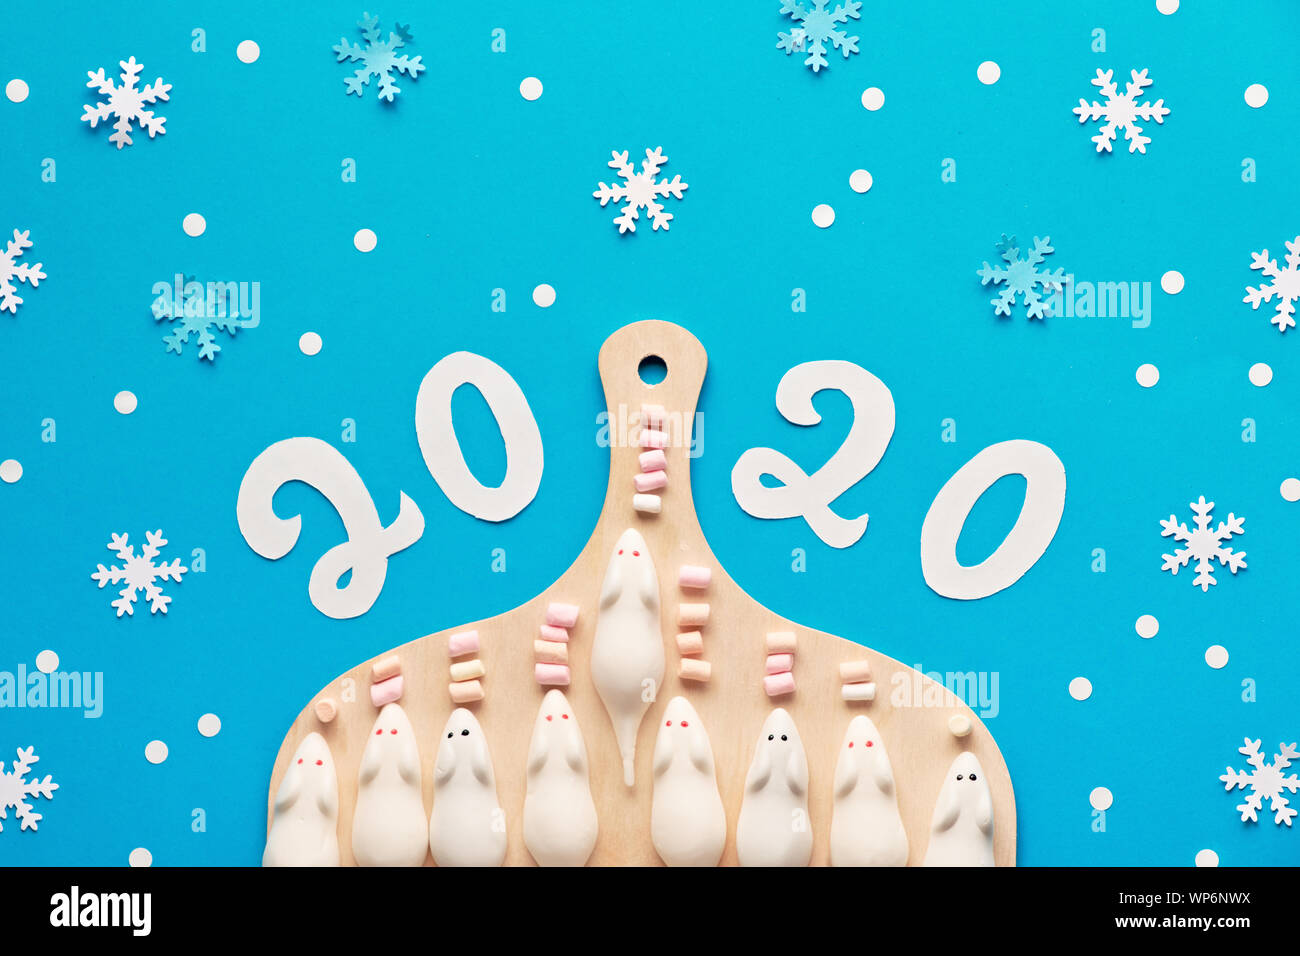 Felice Anno Nuovo 2020! Creative carta piatta laici in blu e bianco con topi marshmallow sul tagliere, fiocchi di neve e numero della carta 2020 Foto Stock